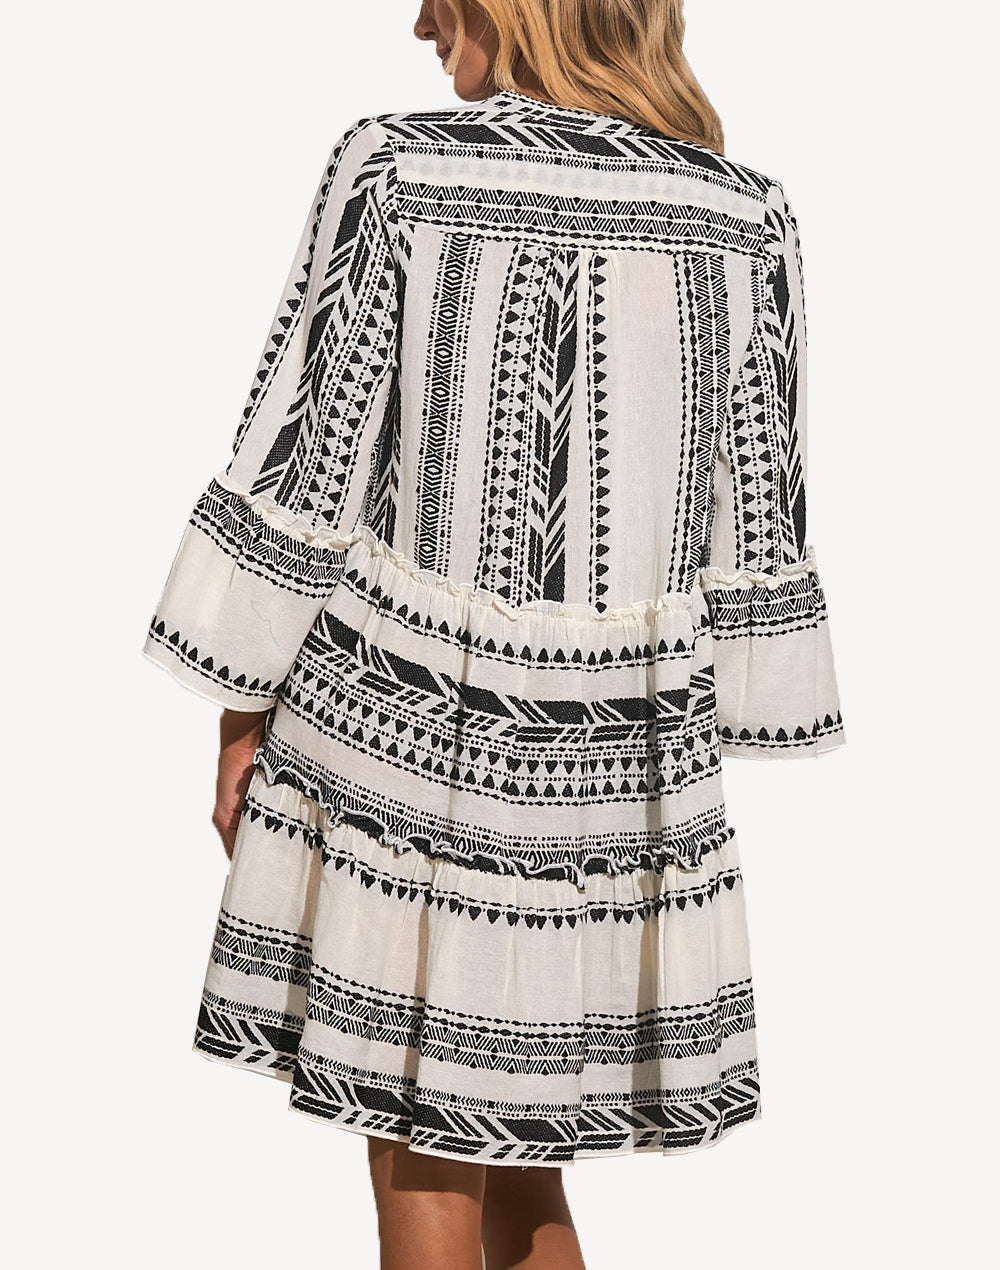 Aztec A Line Long Sleeve Short Dress#color_aztec-black-white